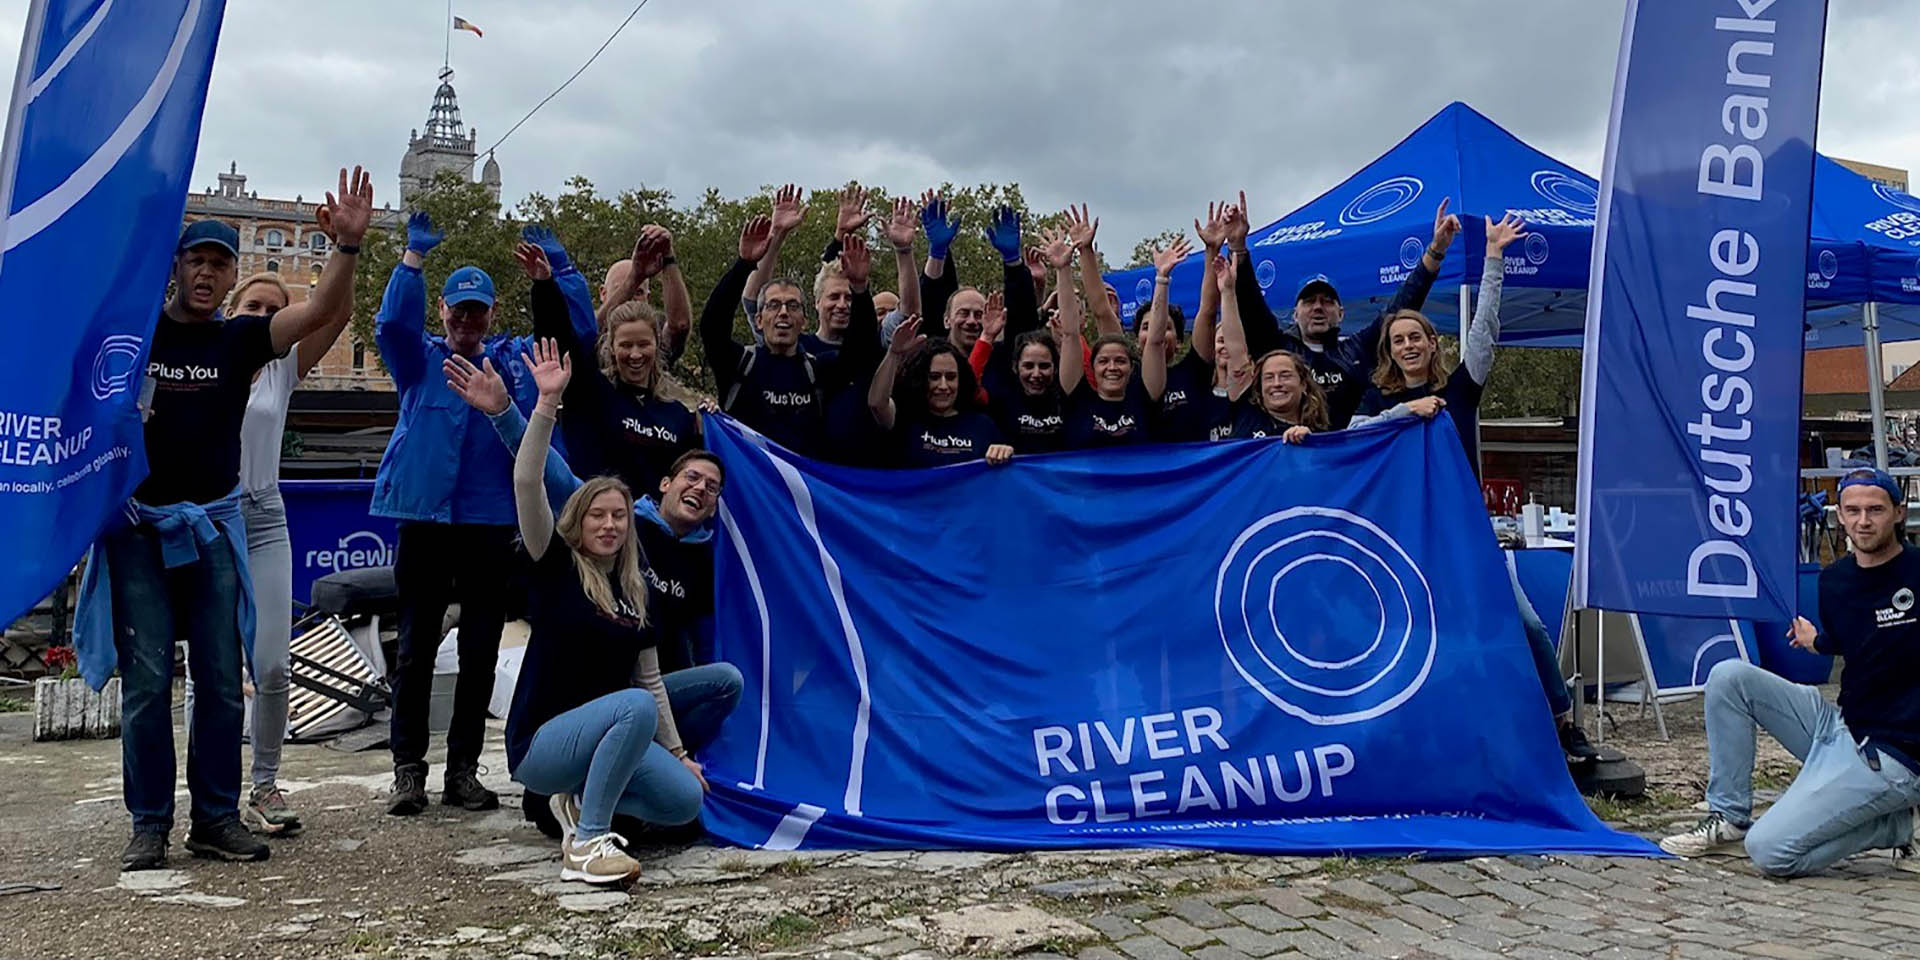 River Cleanup : Le canal de Bruxelles plus propre grâce à nos équipes !